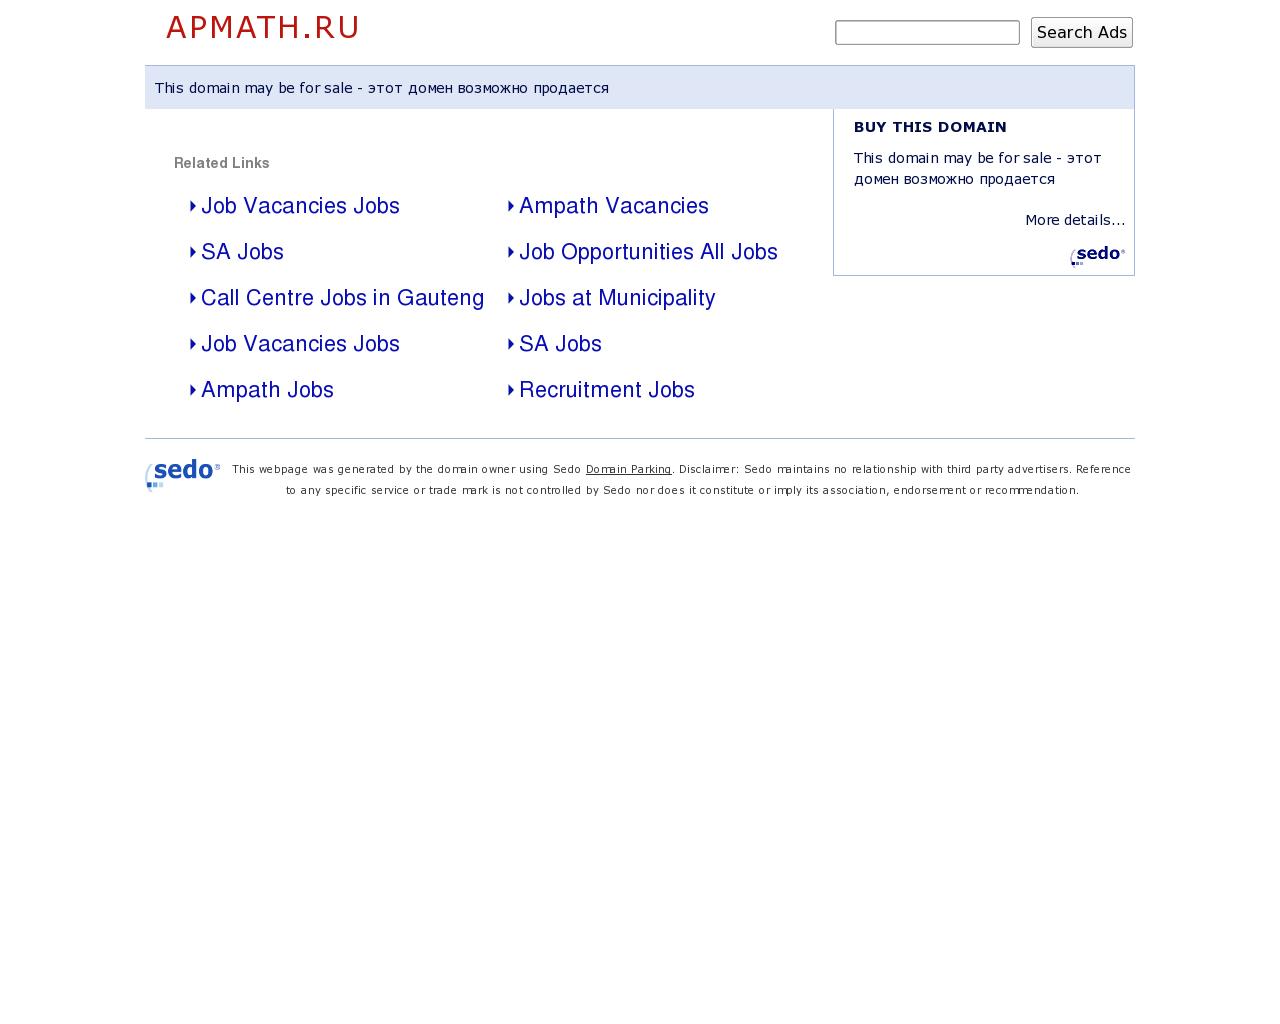 Изображение сайта apmath.ru в разрешении 1280x1024